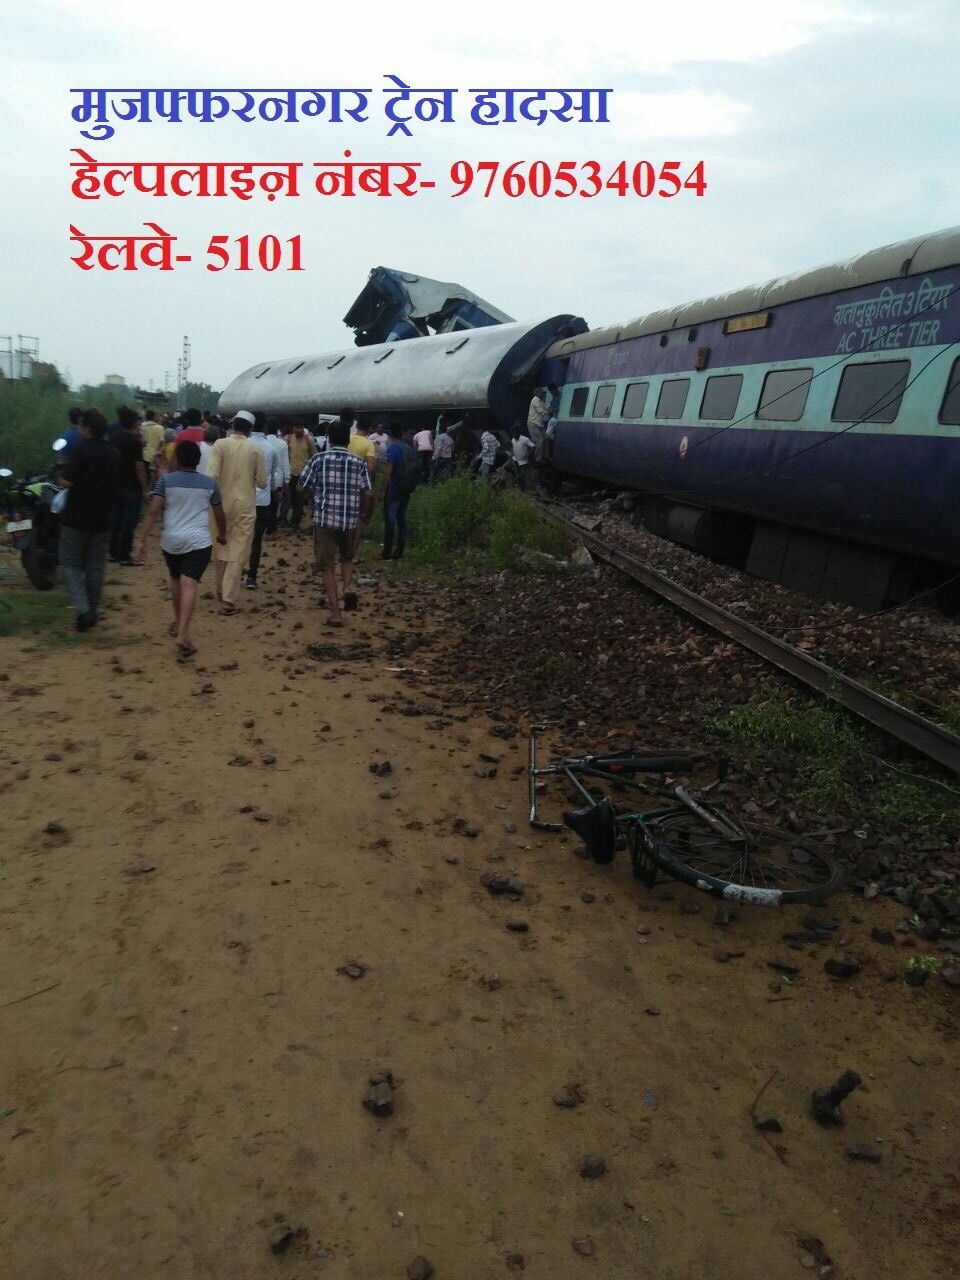 मुजफ्फरनगर ट्रेन हादसे में अब तक 23 की मौत, 400 घायल, आतंकी साजिश की आशंका, यूपी एटीएस की टीम रवाना